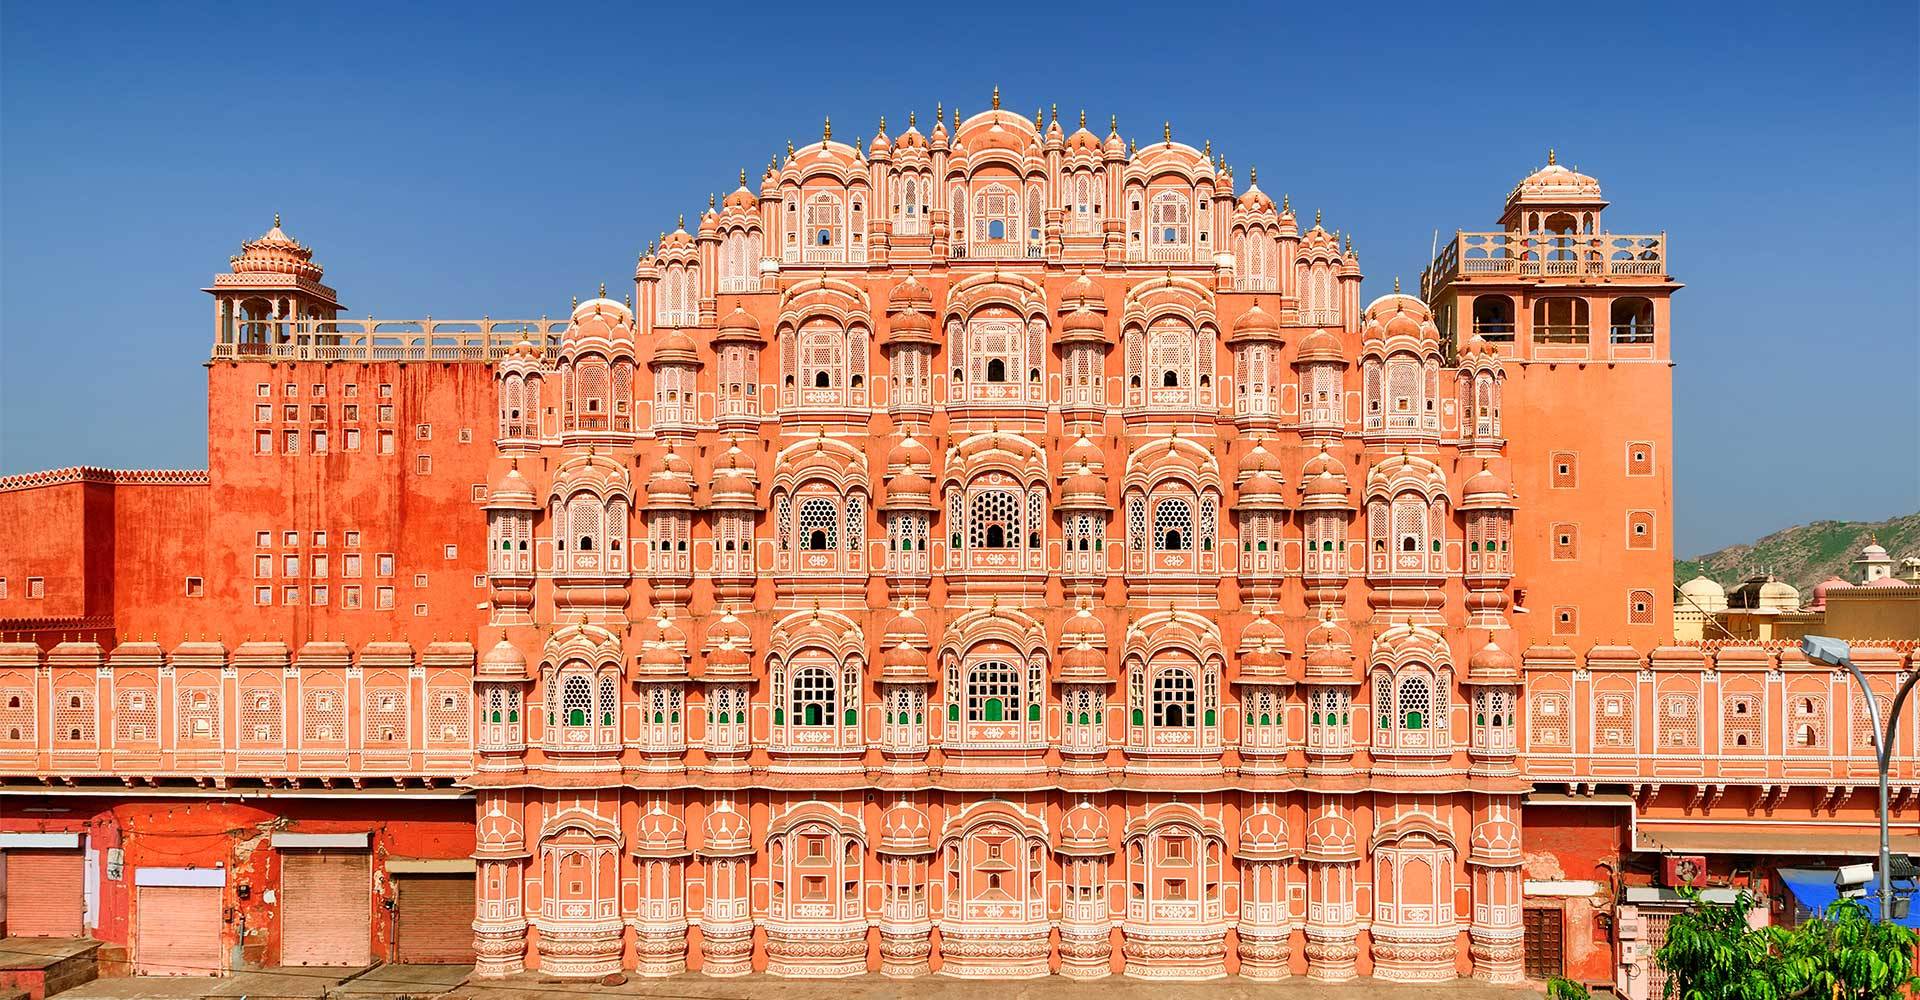 Джайпур - романтичный розовый город неземной красоты